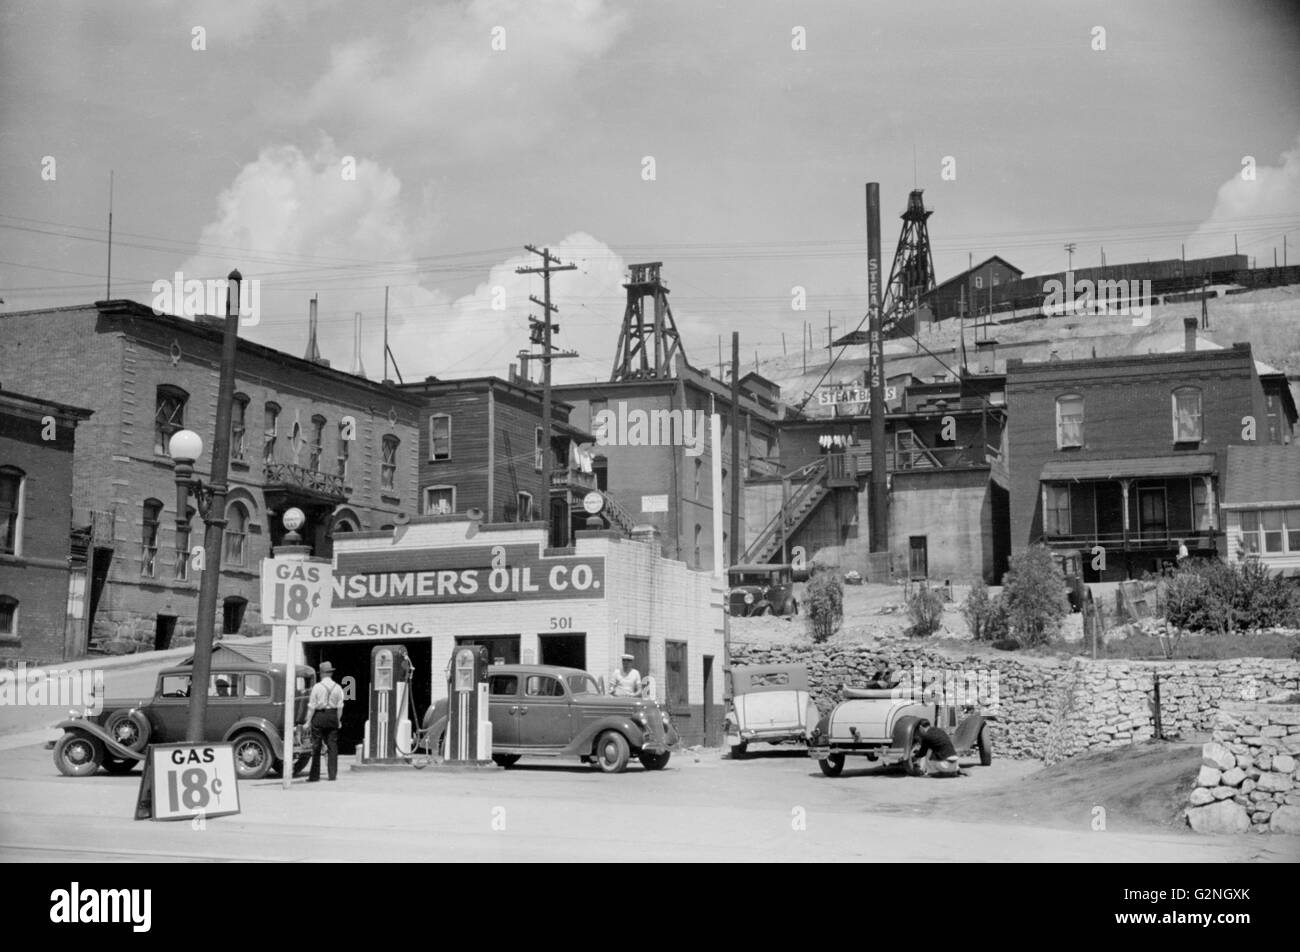 Gas Station,Butte,Montana,Arthur Rothstein pour Farm Security Administration (FSA), Juillet 1939 Banque D'Images